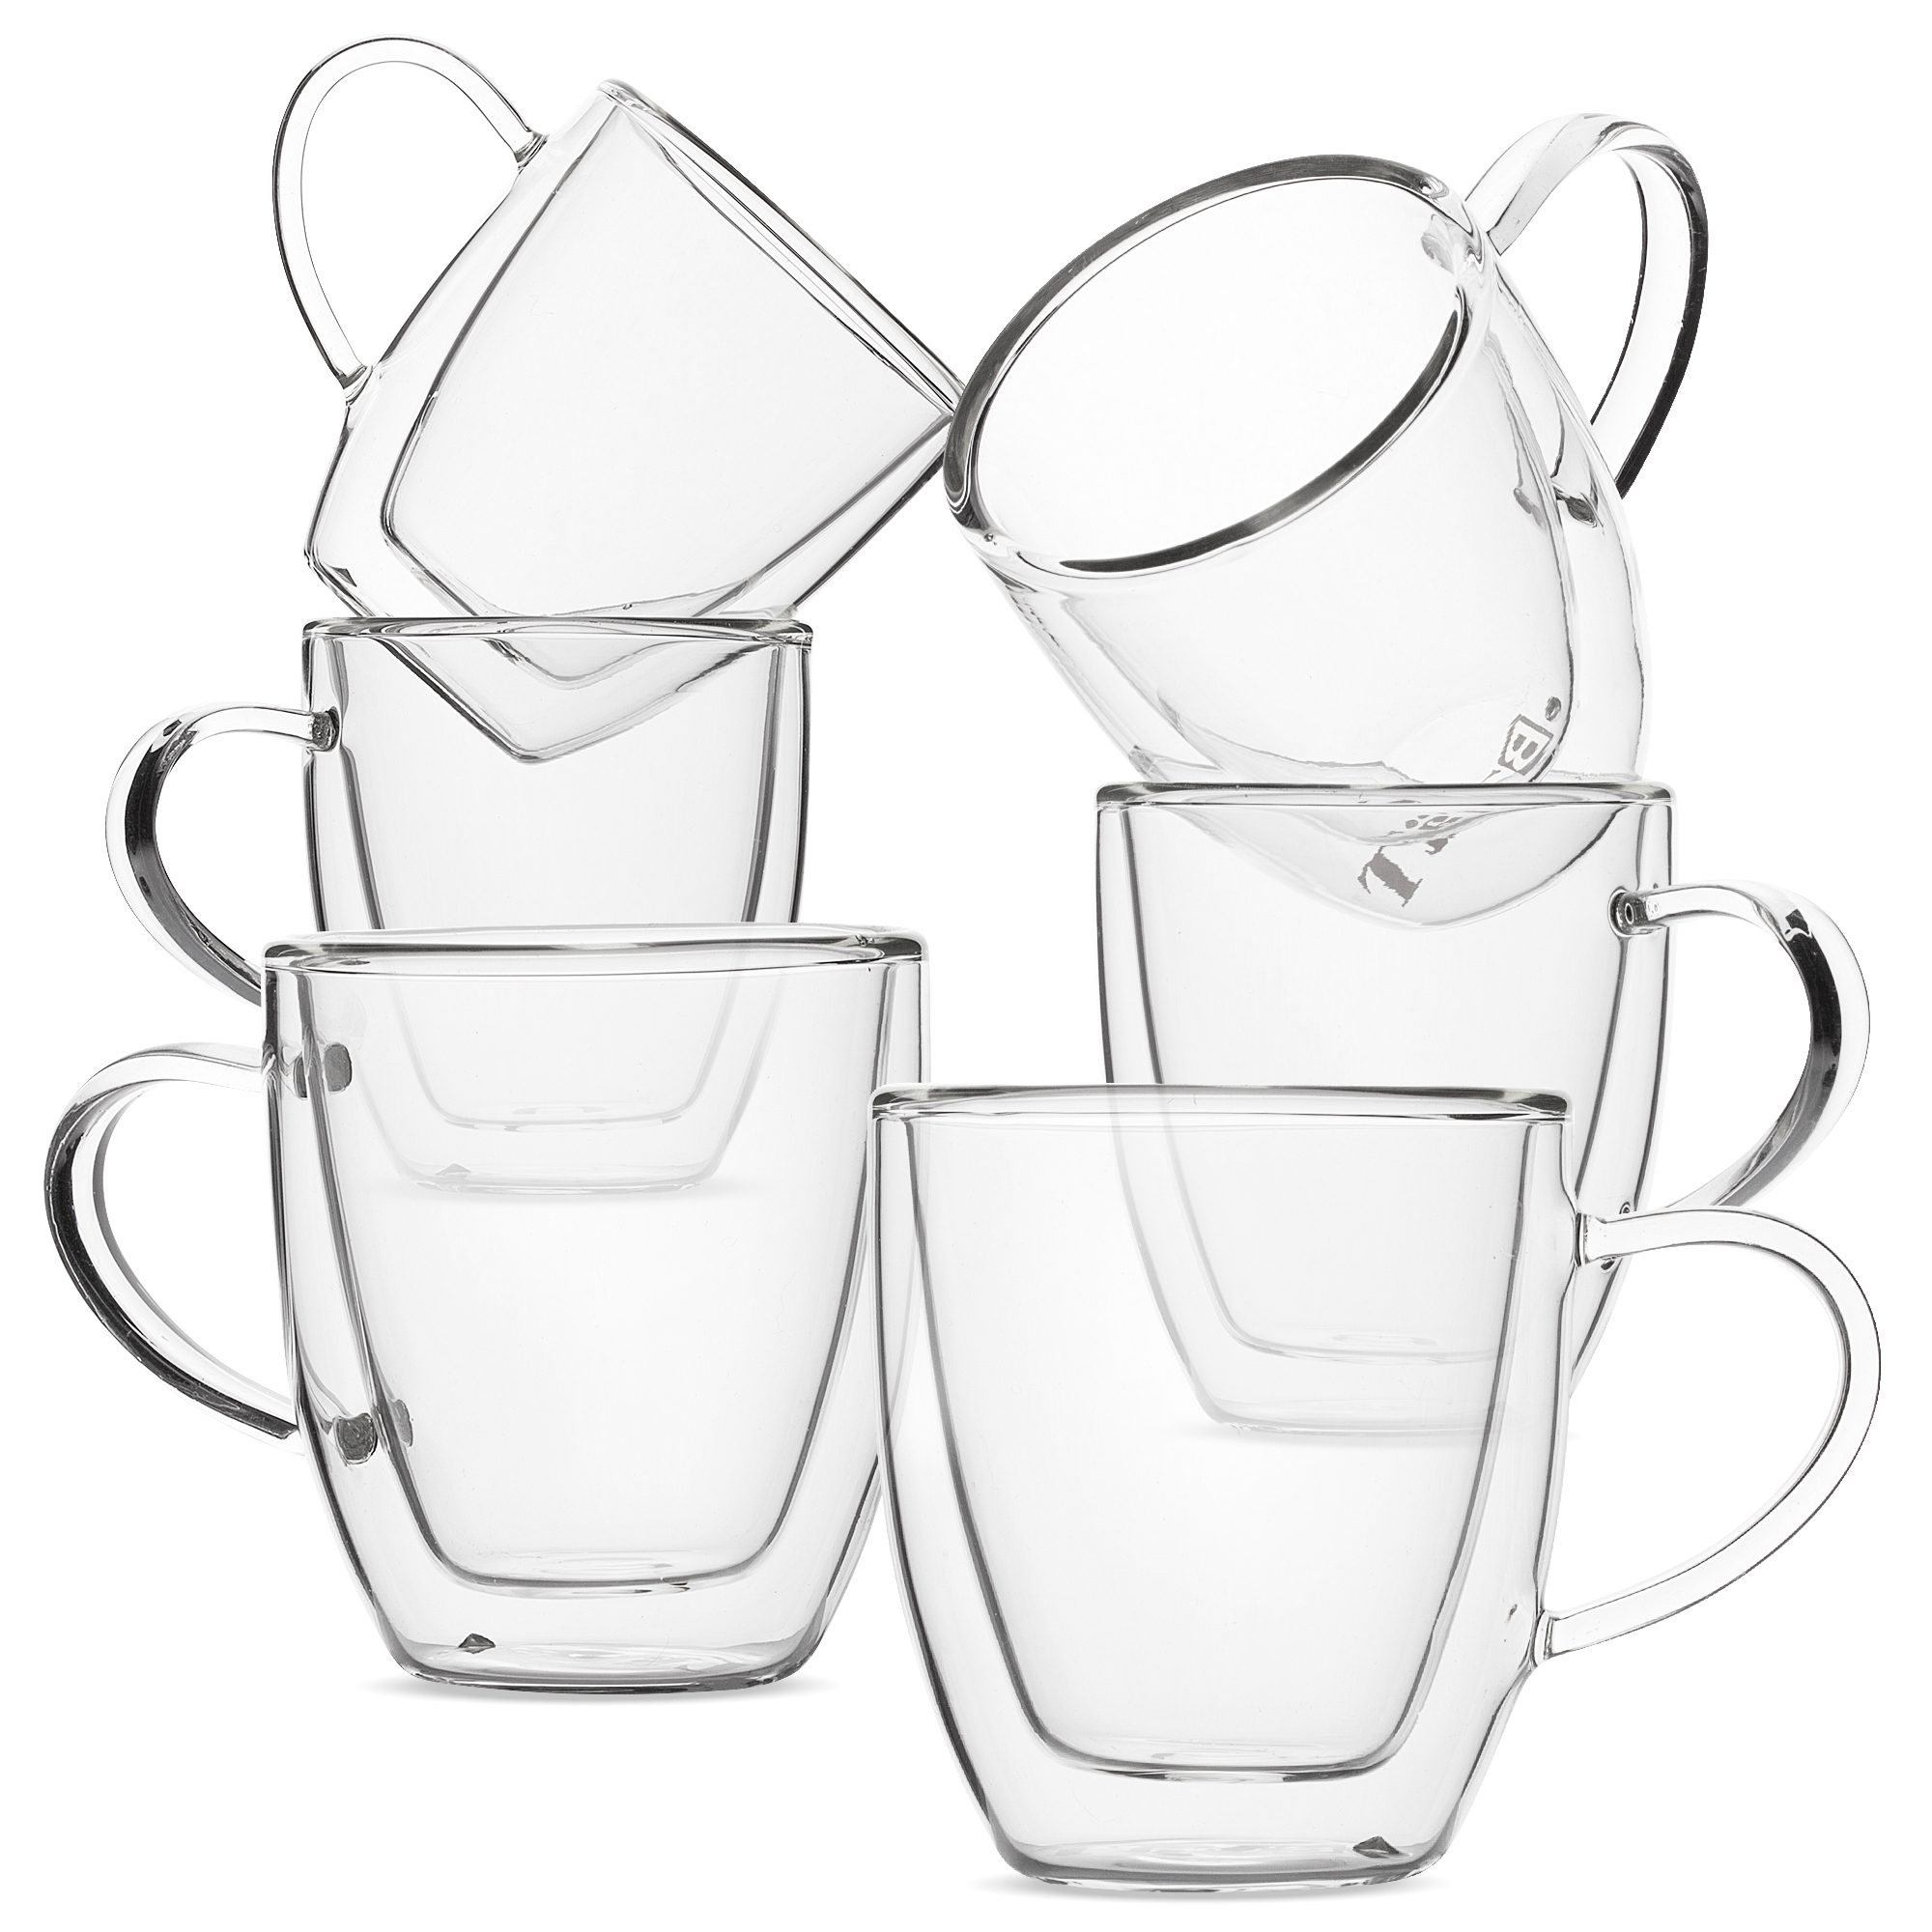 BTäT- Insulated Espresso Cups (2oz, 60ml)